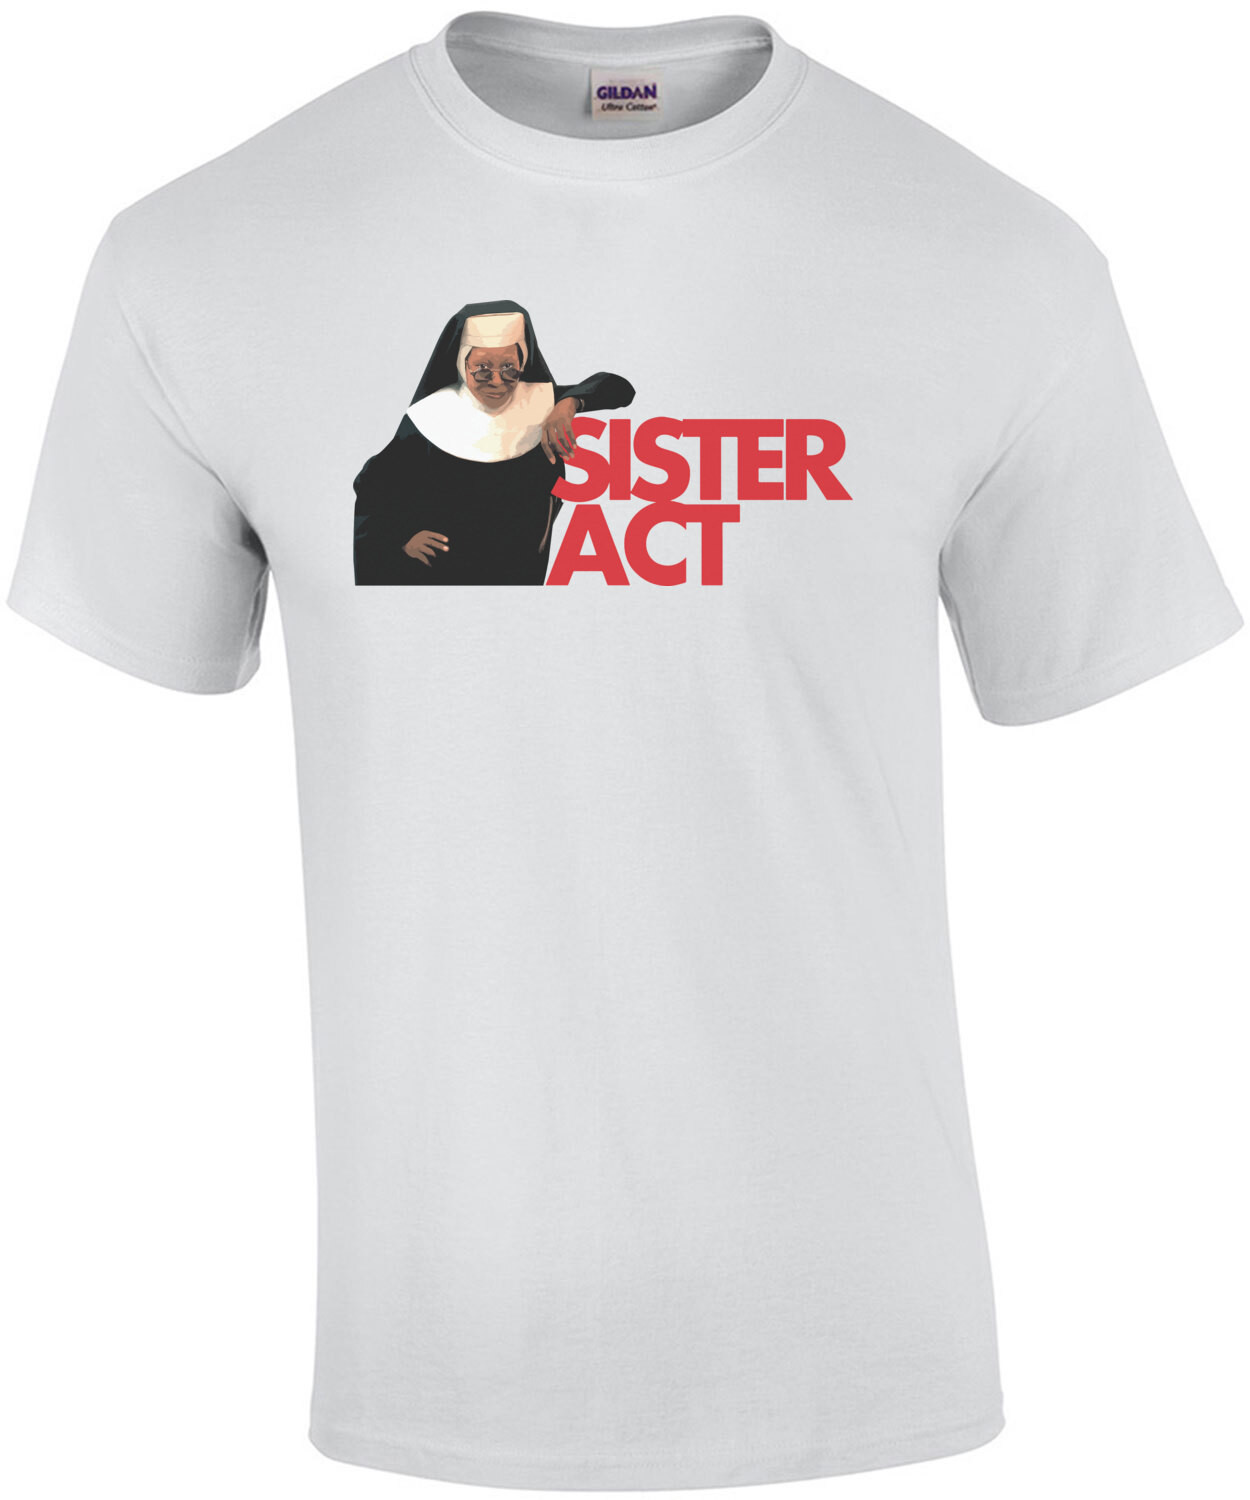 Sister Act - 90's T-Shirt